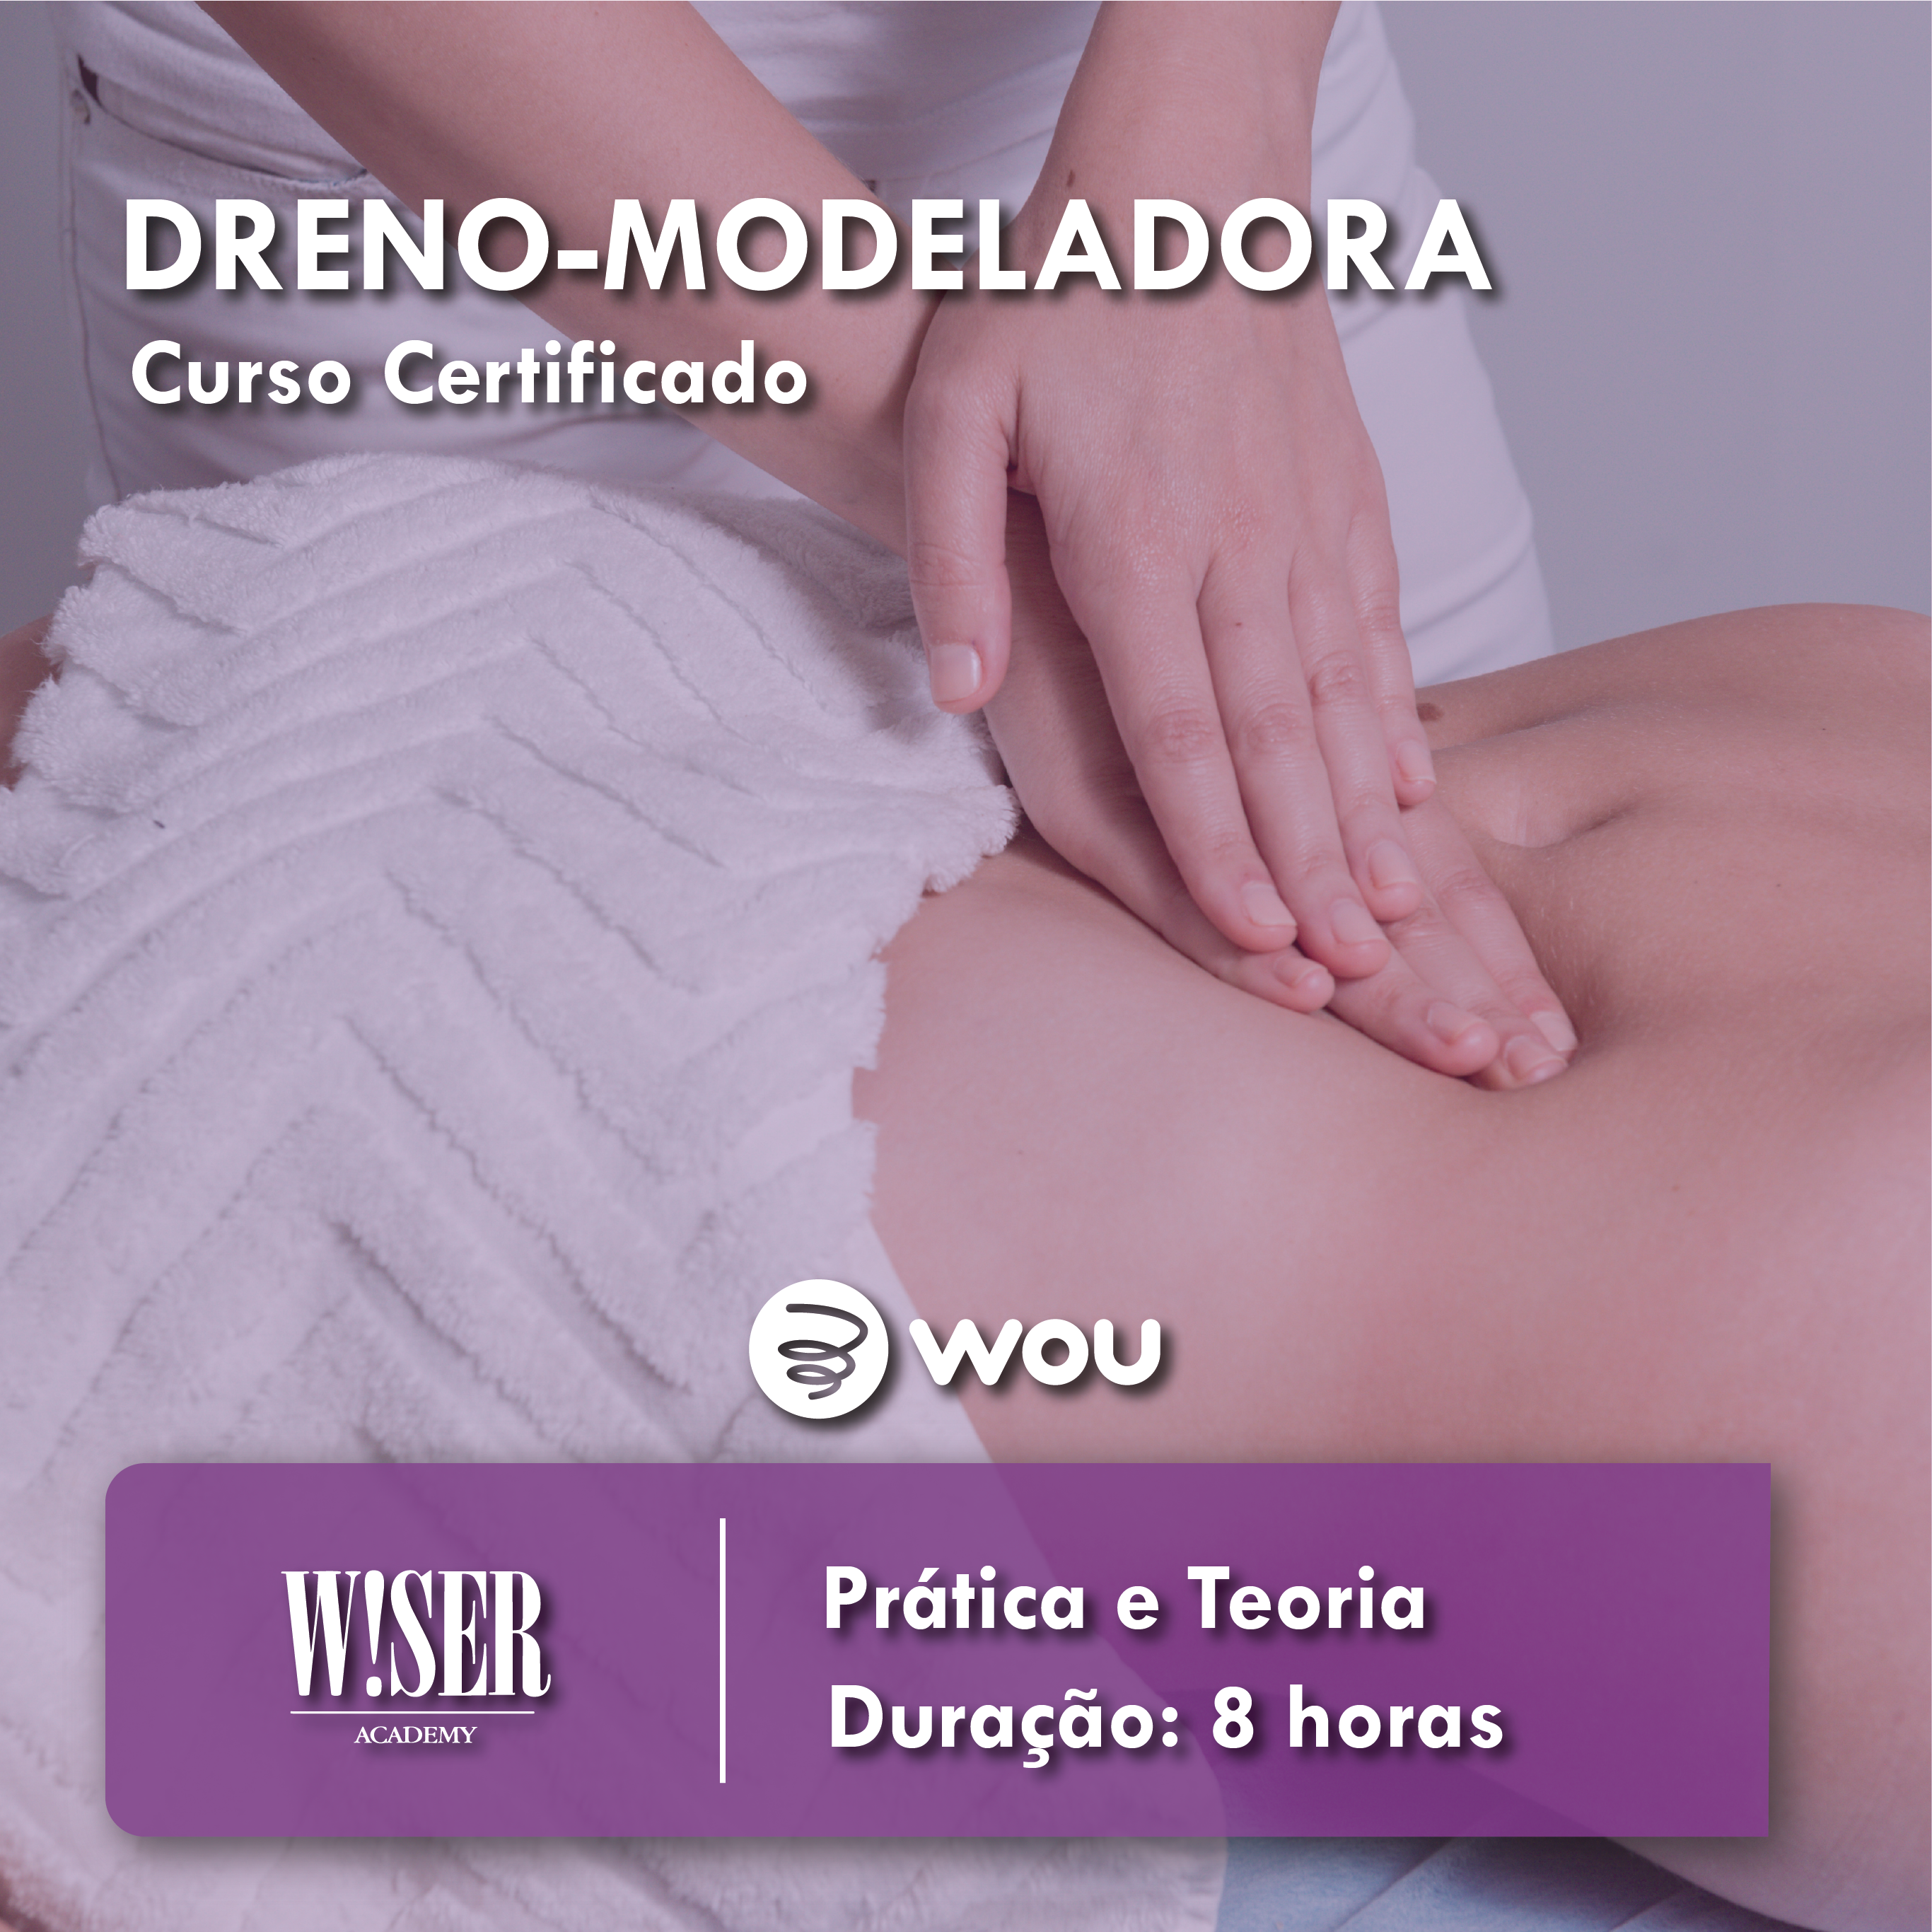 Curso de Massagem Dreno-Modeladora em Coimbra